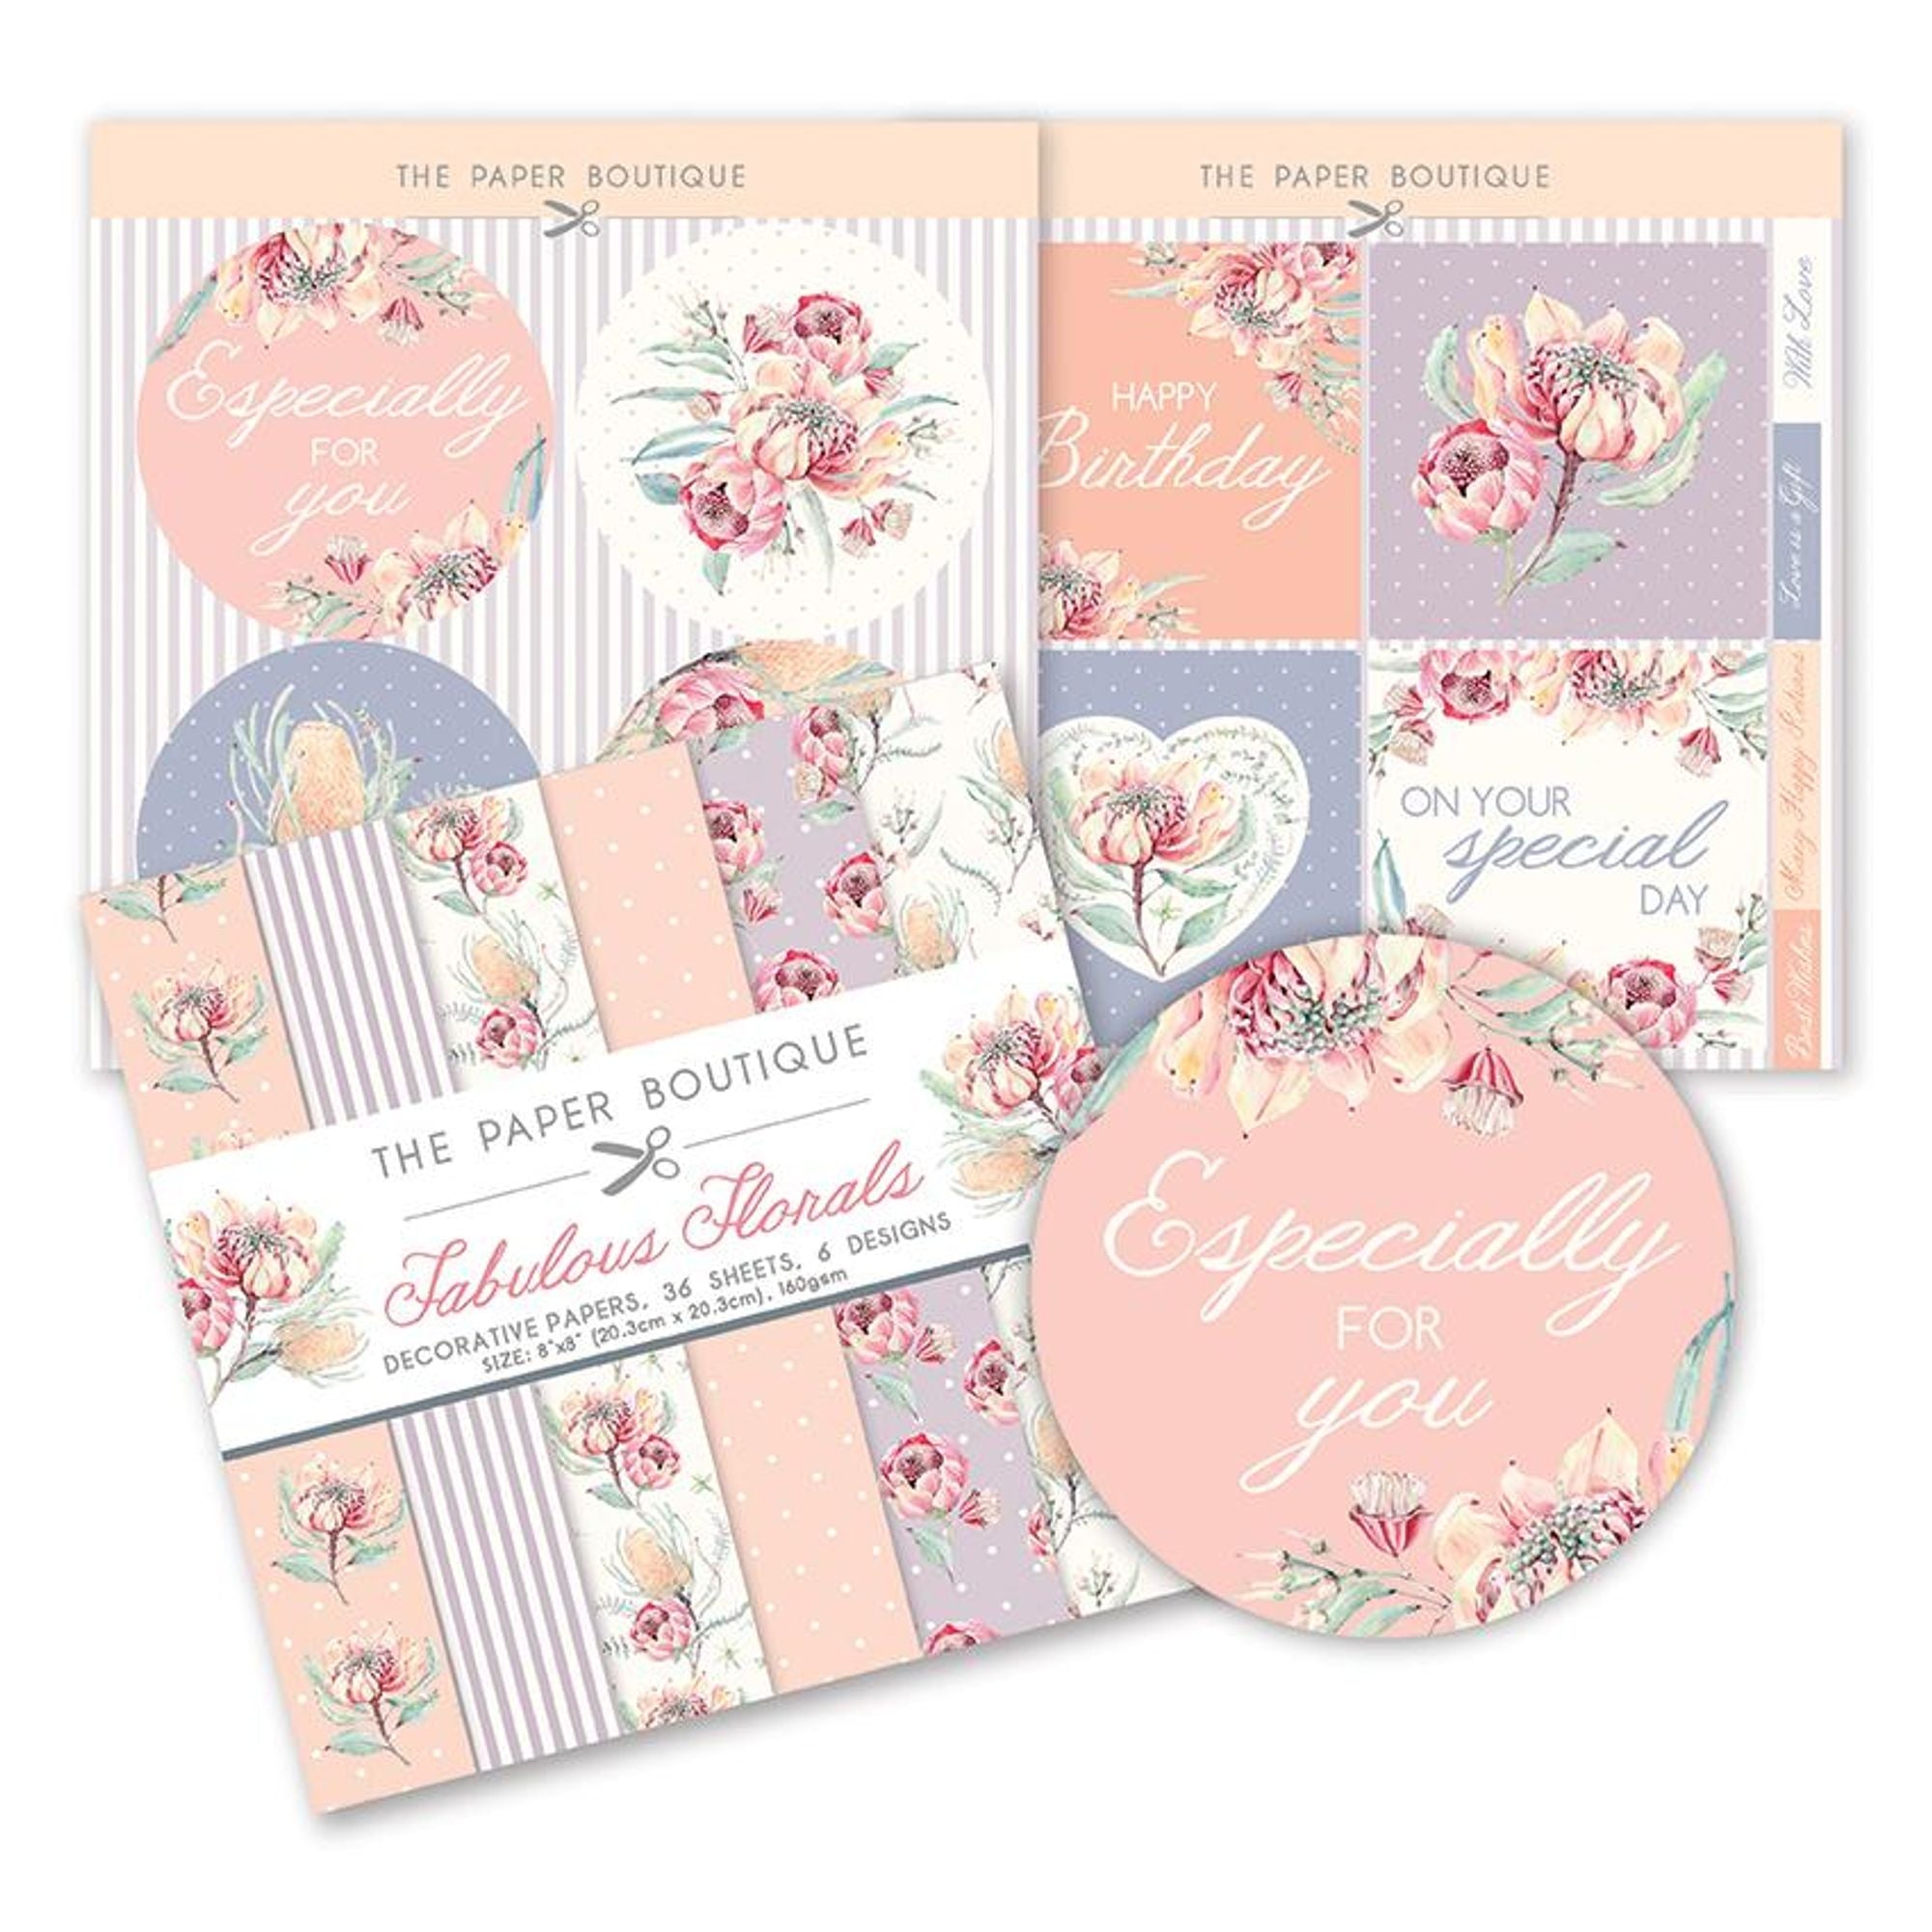 The Paper Boutique Fabulous Florals Paper Kit